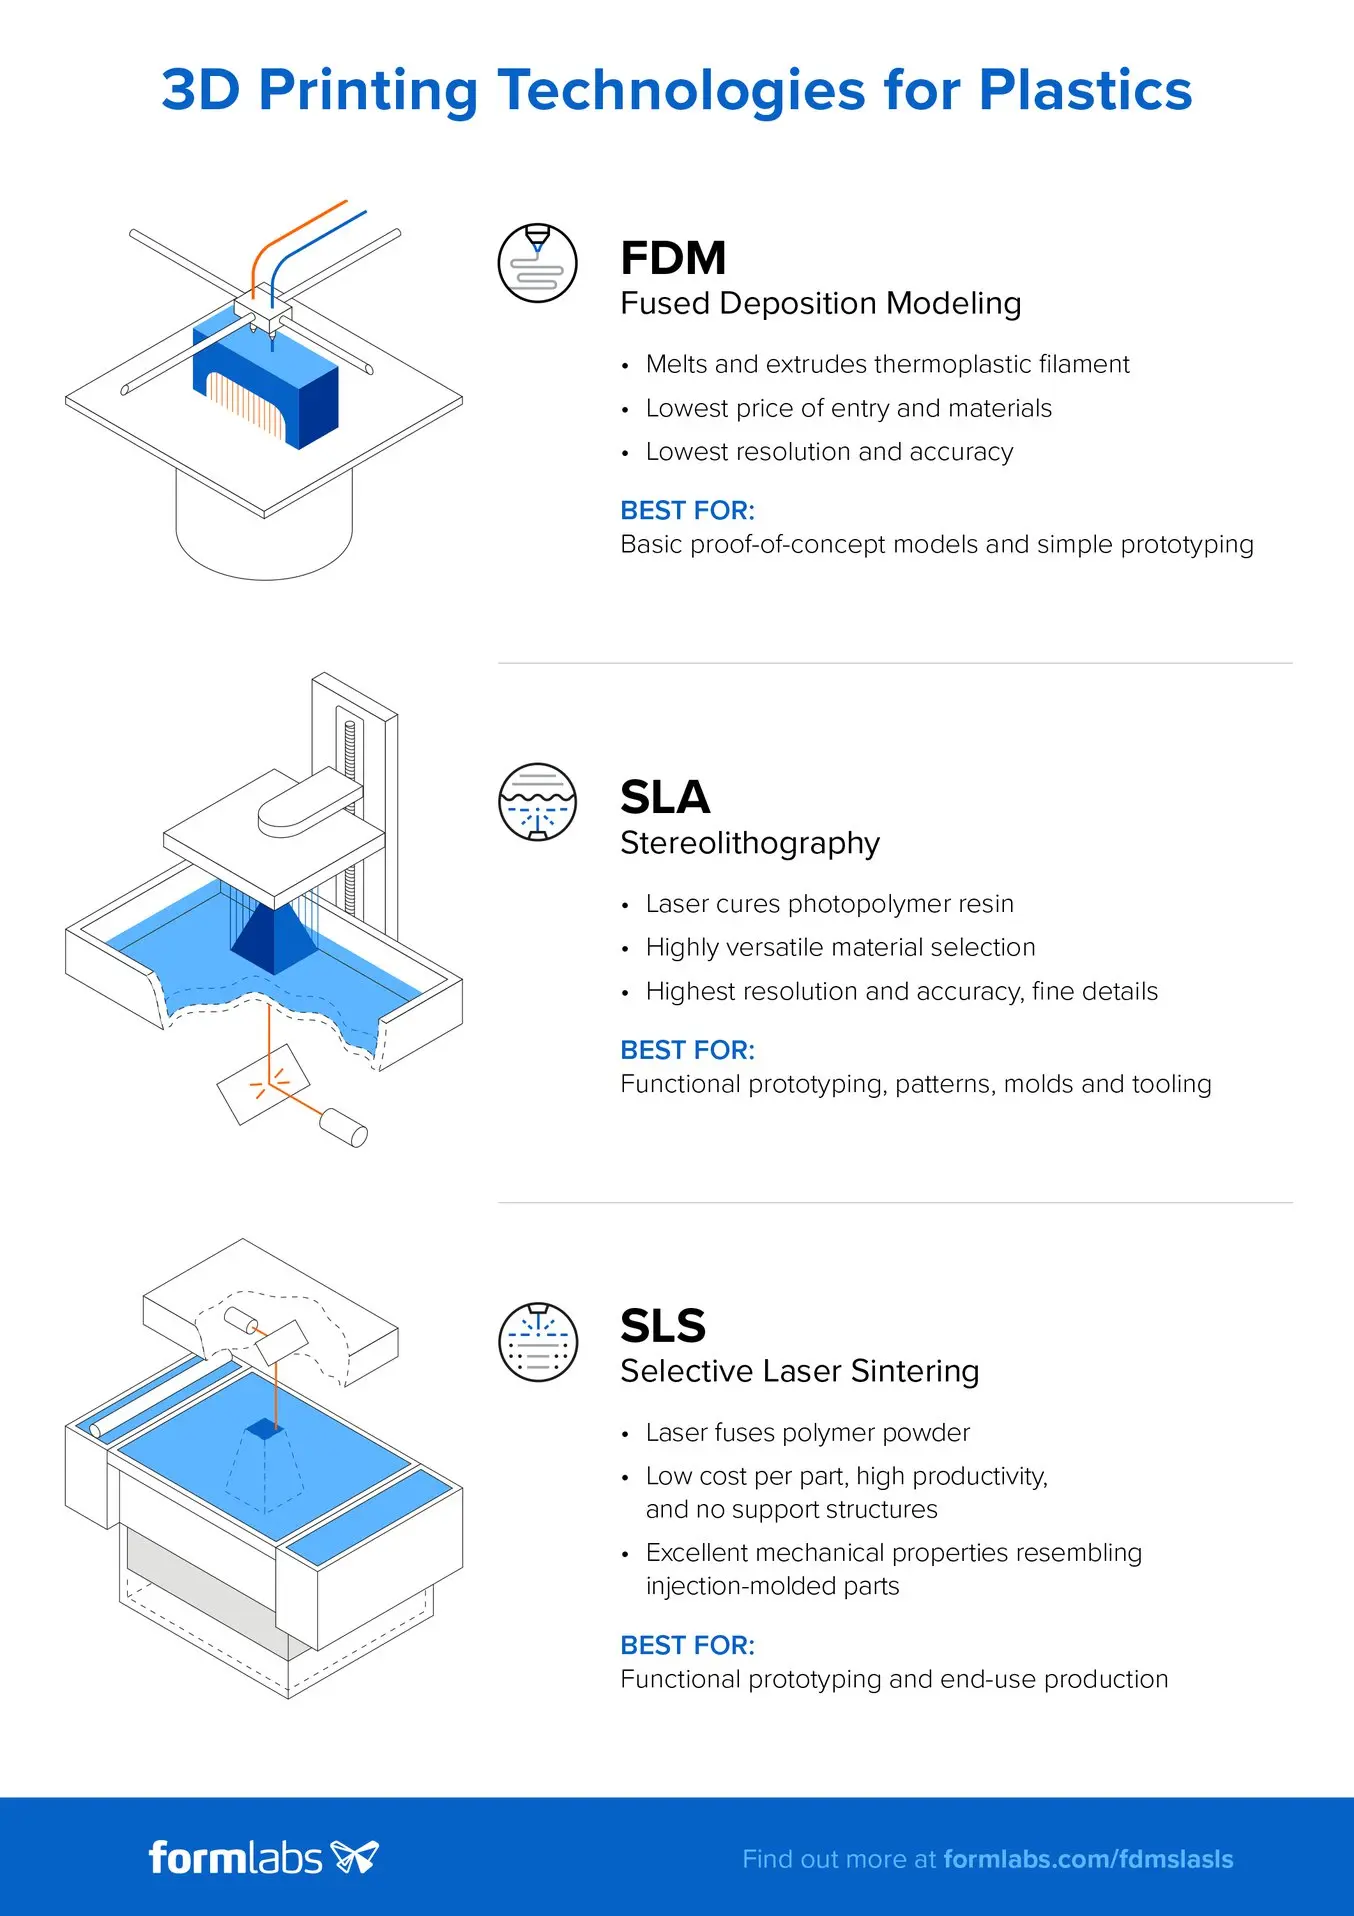 信息图：对比塑料 3D 打印工艺：选择性激光烧结 (SLS)、熔融沉积成型 (FDM) 和立体光固化 (SLA)。